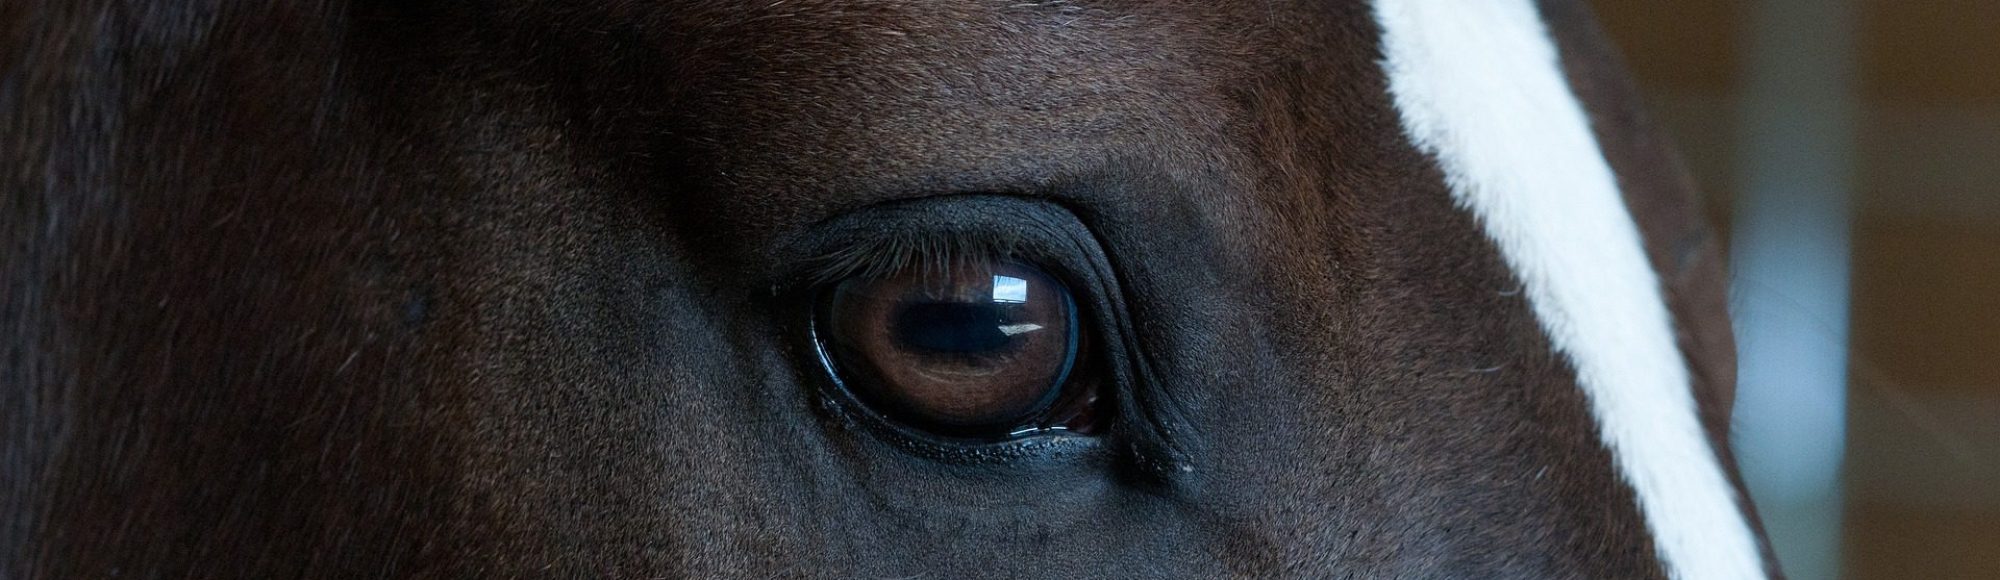 Nahaufnahme des Auges eines dunkelbraunen Pferdes